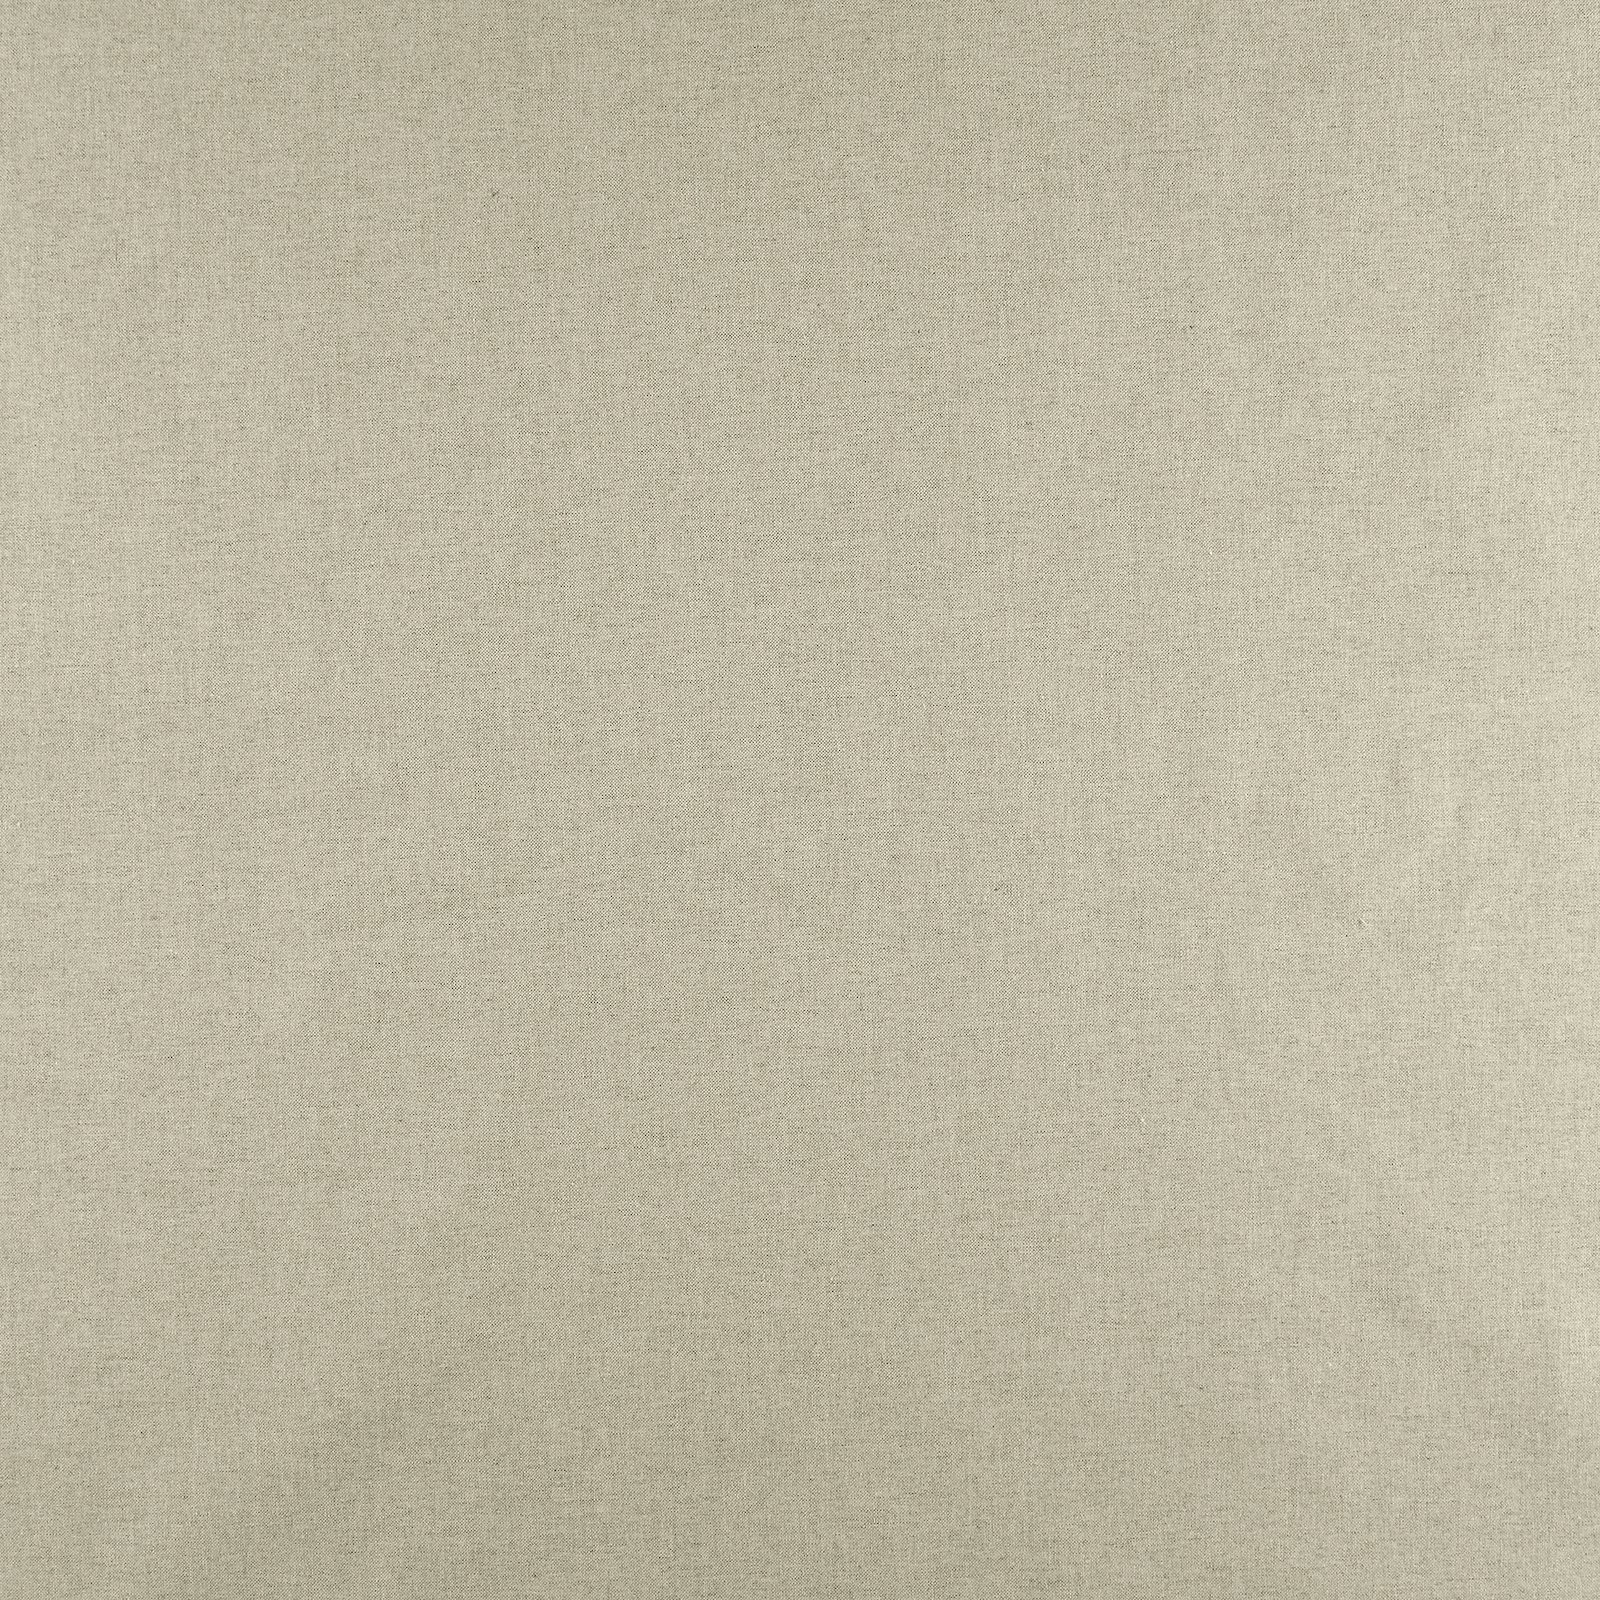 Tekstilvoksduk Linlook/lys grå 870284_pack_solid